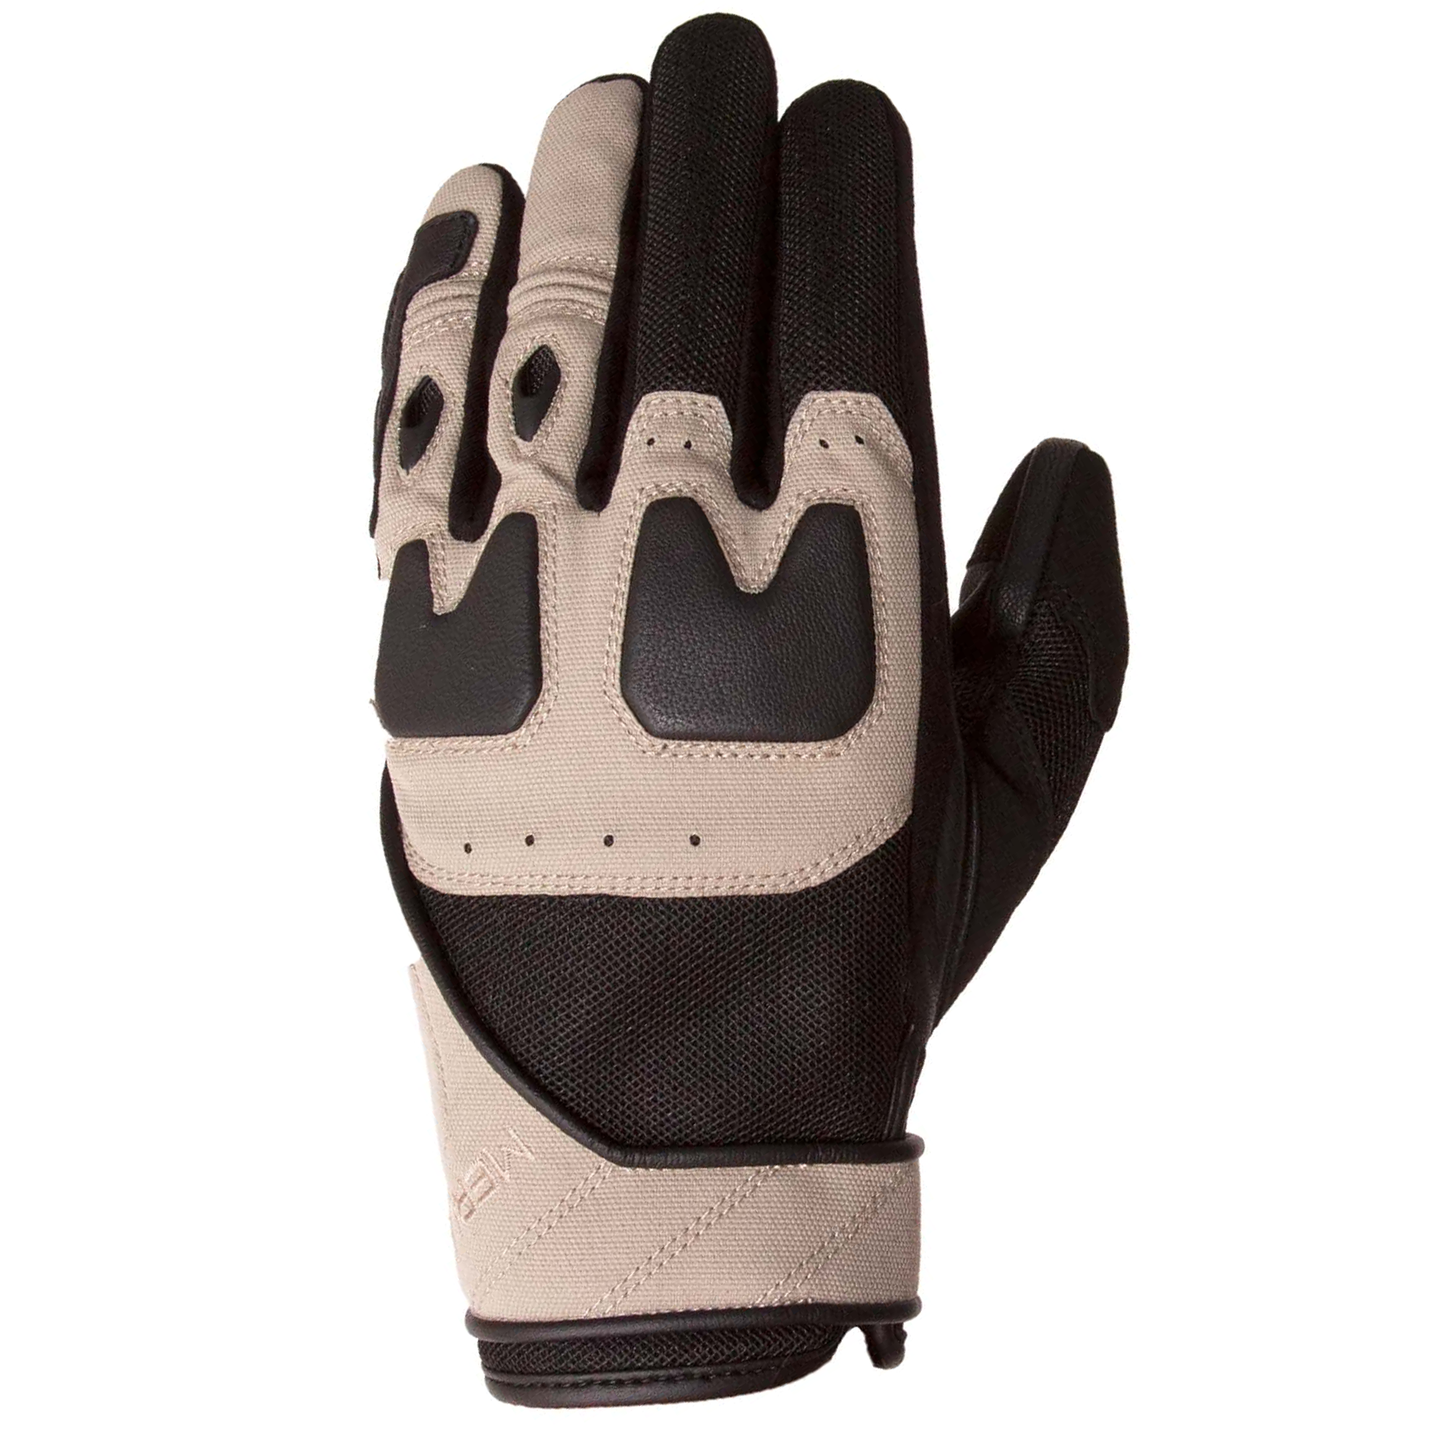 Merlin Kaplan Mesh Gloves - Sand